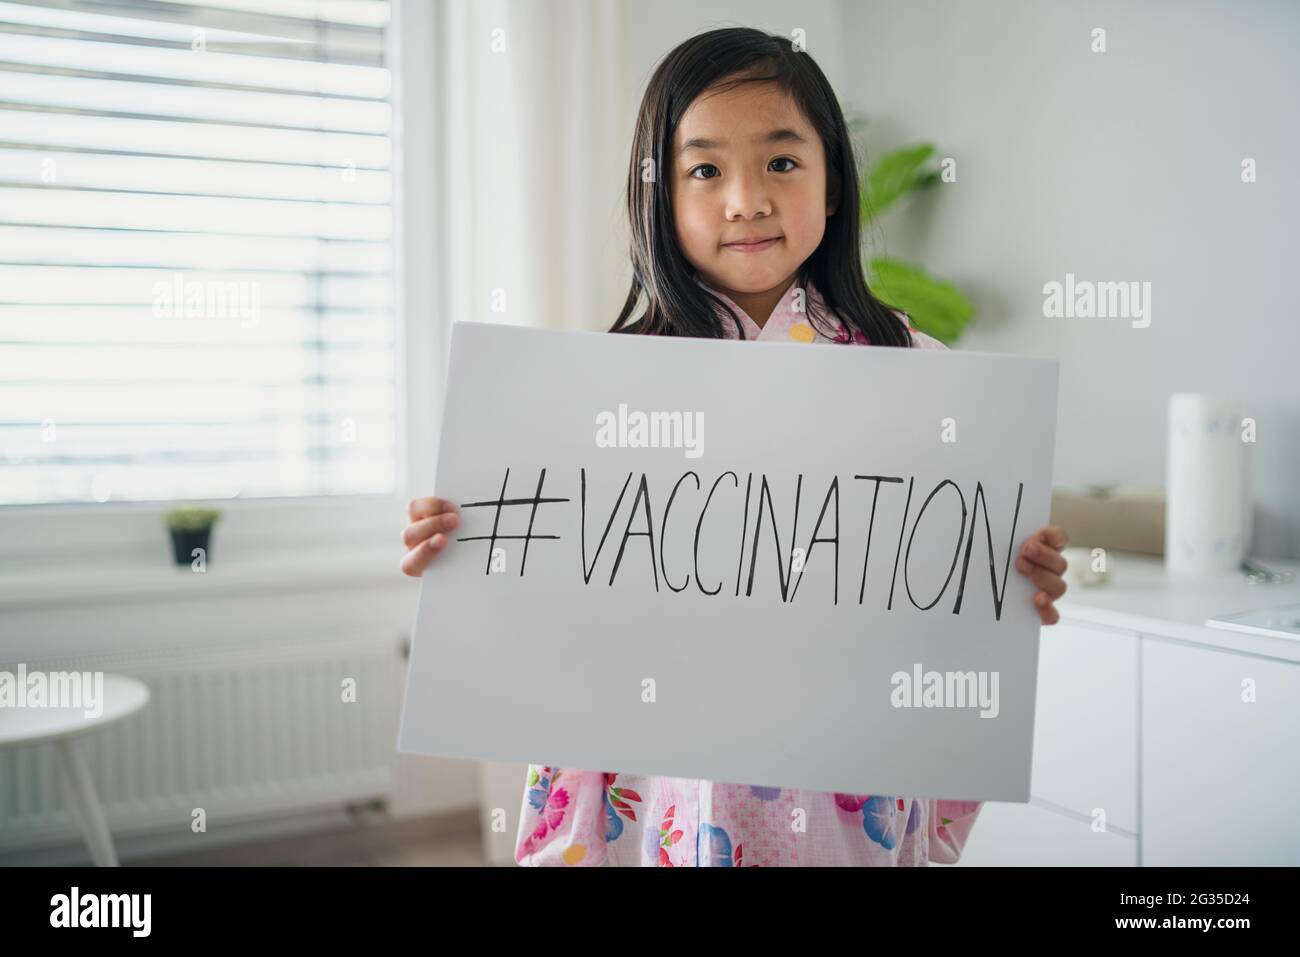 Retrato de niño pequeño japonés, coronavirus, covid-19 y concepto de campaña de vacunación. Foto de stock